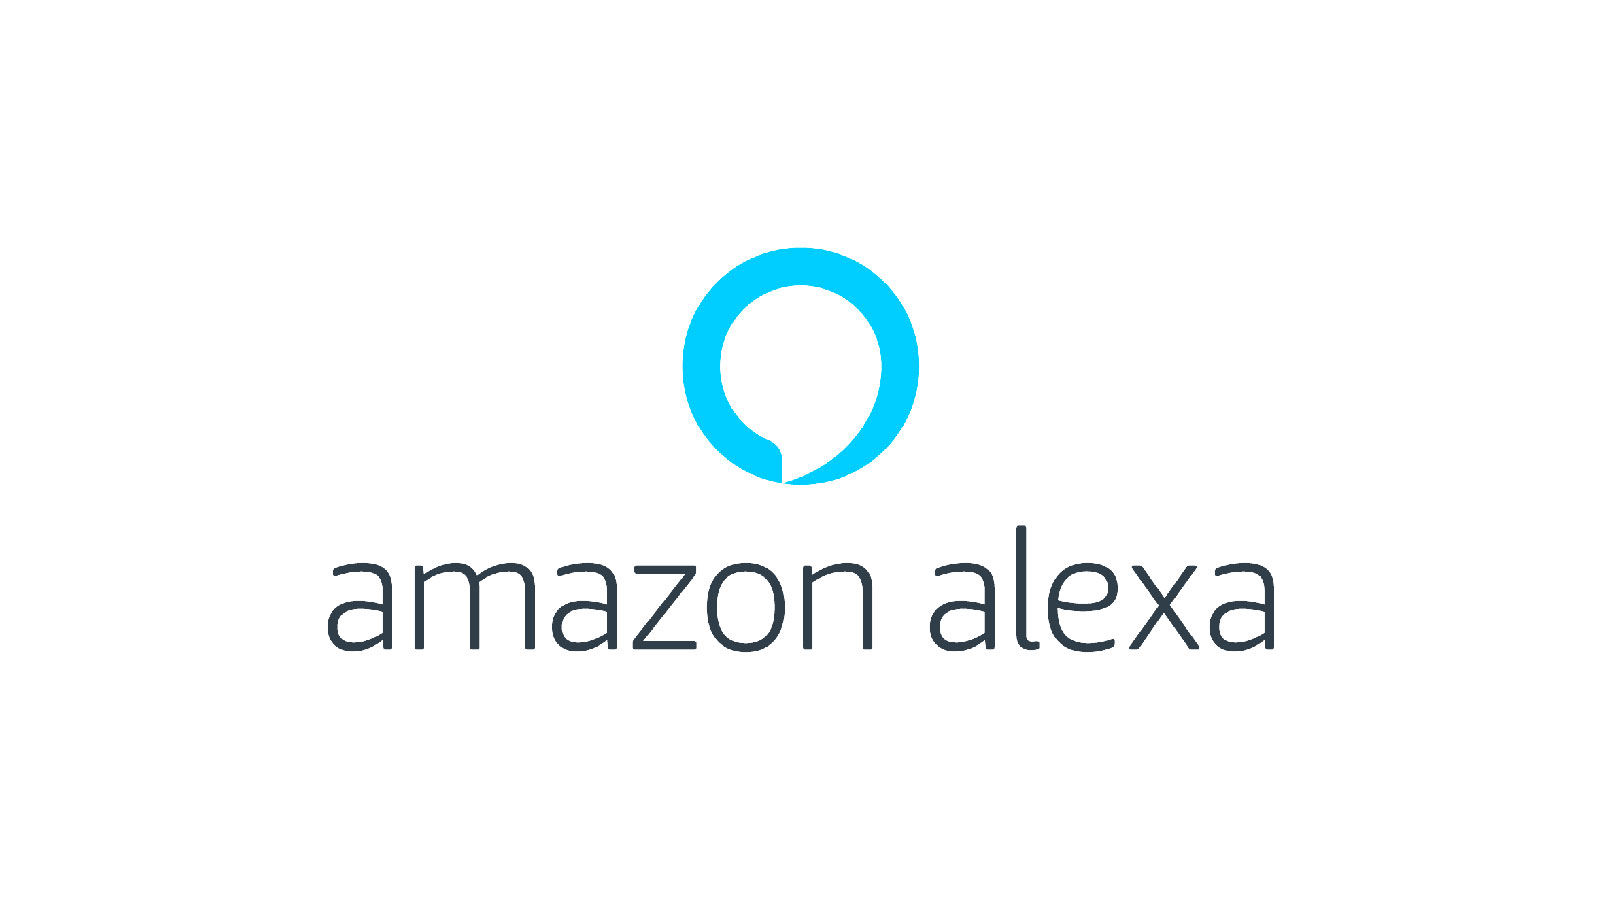 Amazon voulait développer un wearable avec Alexa et GPS pour surveiller ses enfants